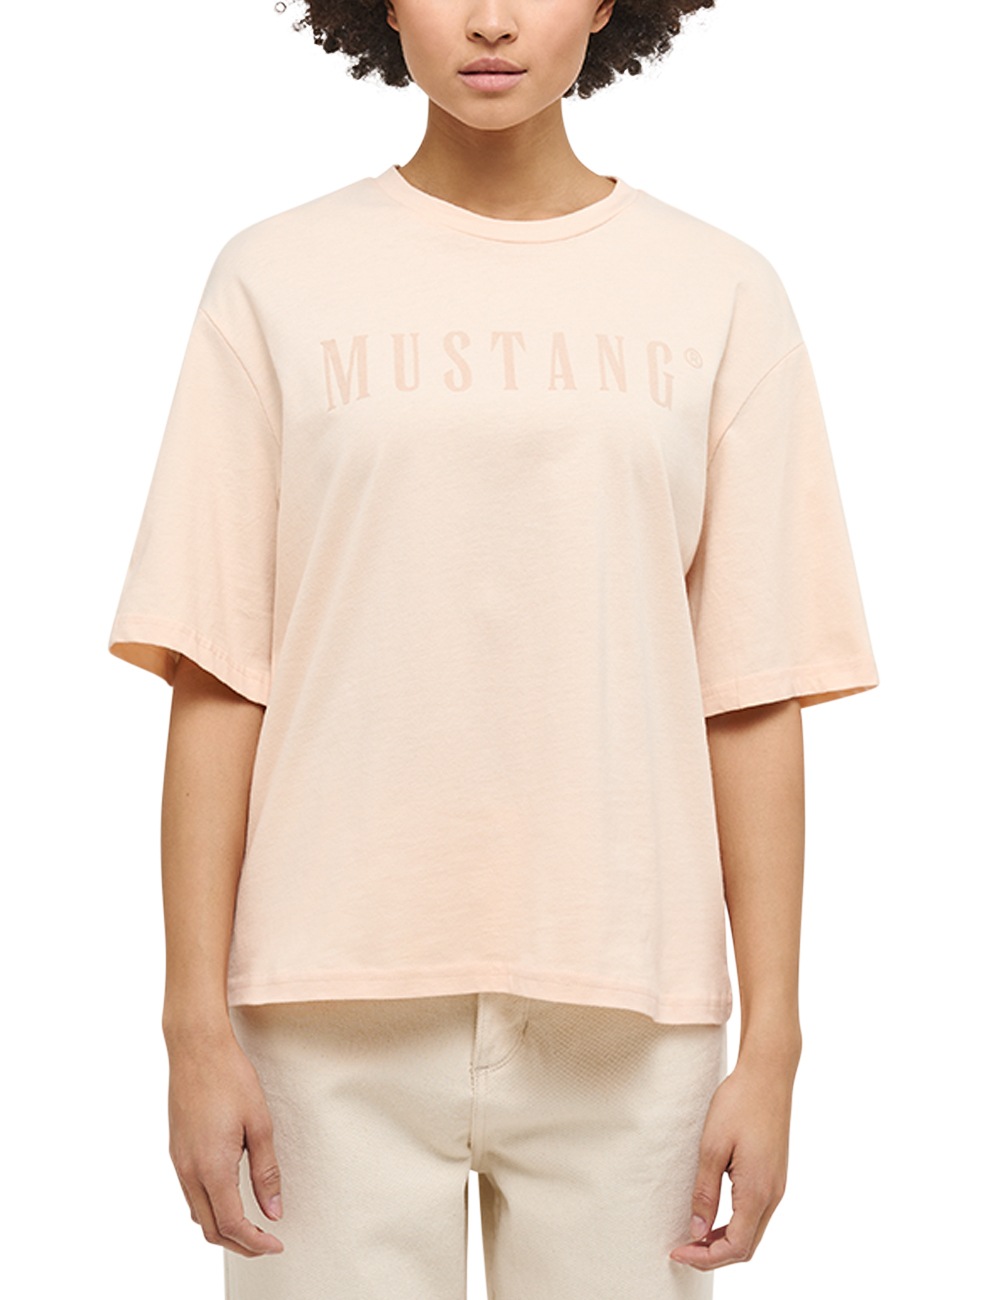 MUSTANG Kurzarmshirt »Mustang T-Shirt« bestellen | I\'m walking